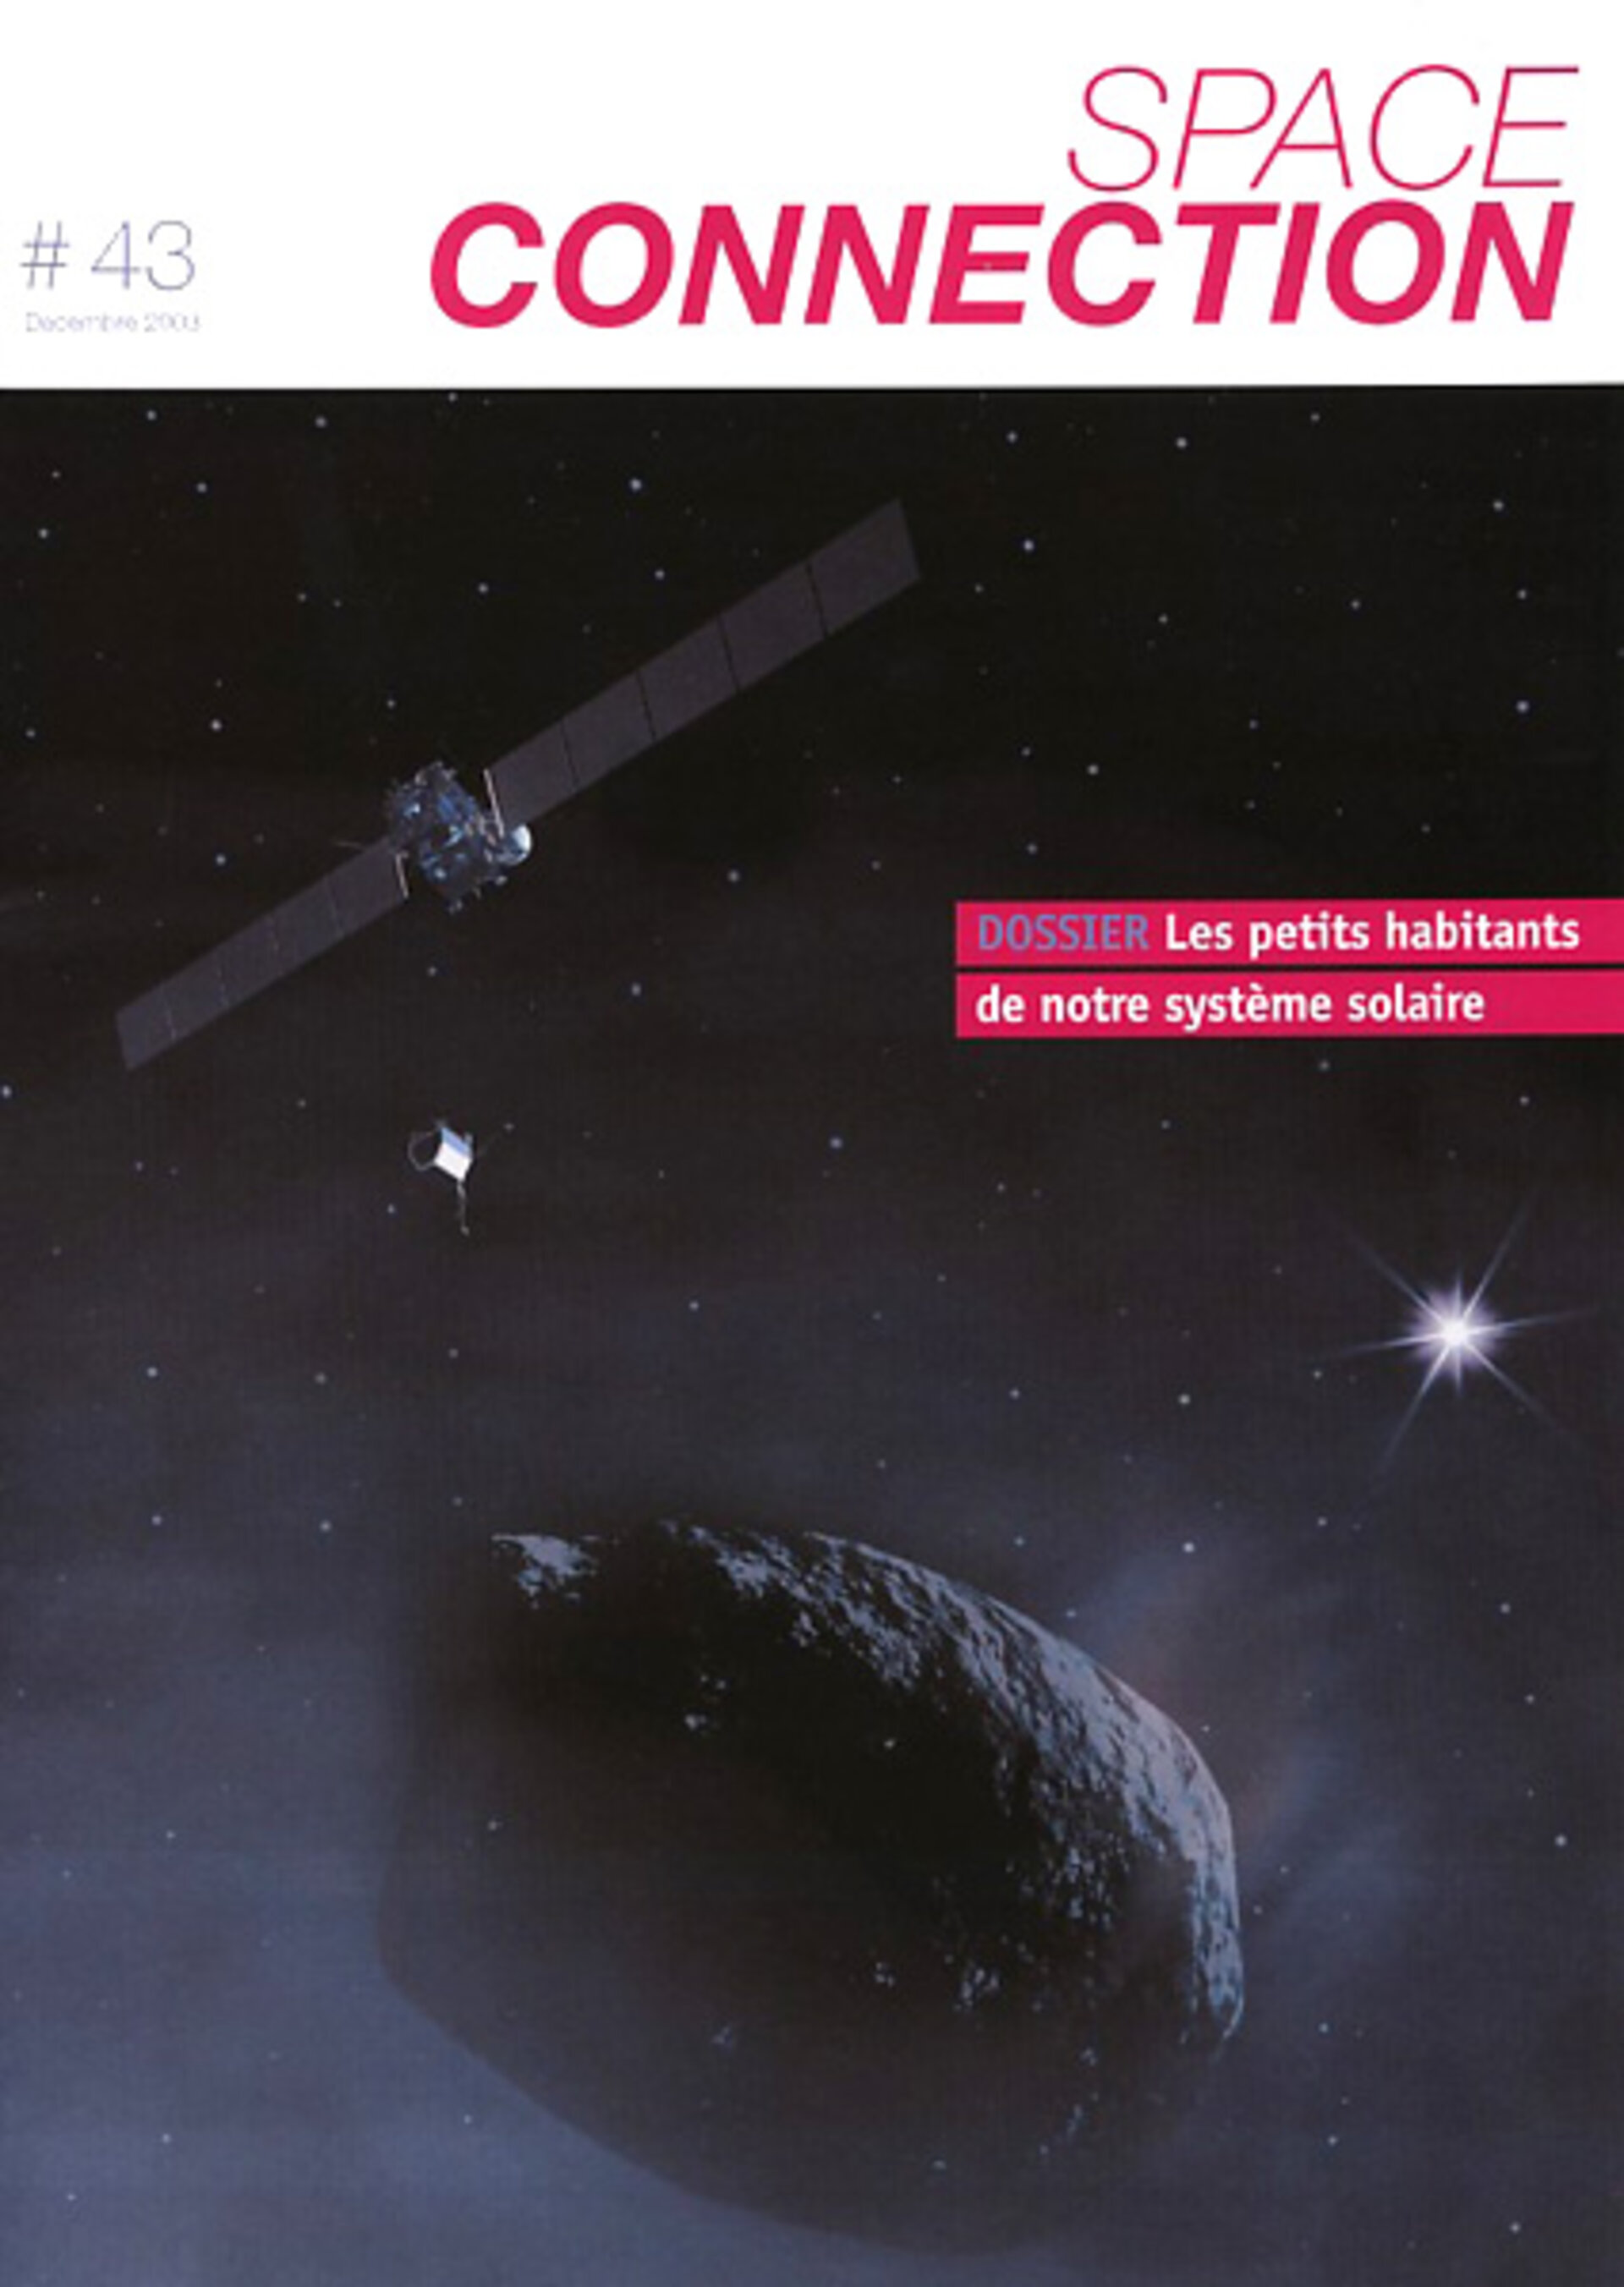 Space Connection se consacre à Rosetta